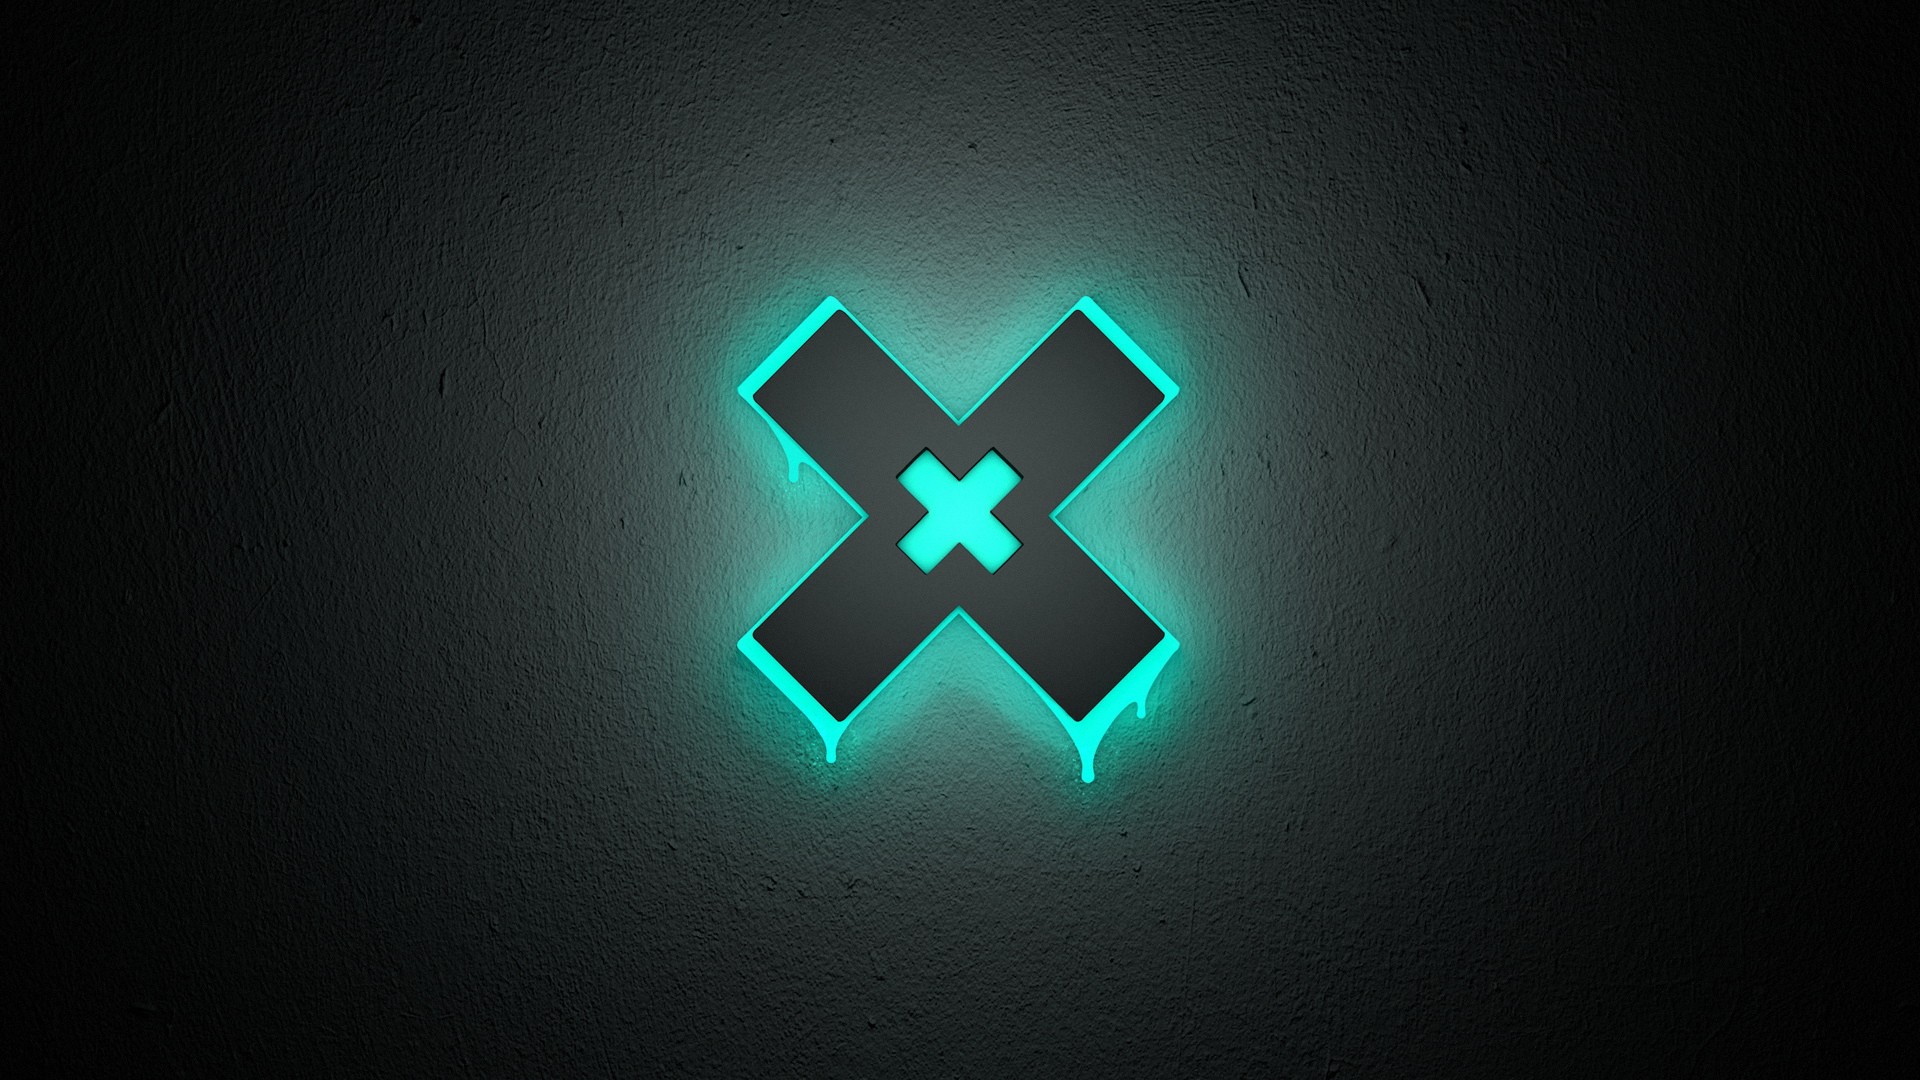 Neon X Abstract Logo Wallpaper And Stock Photos